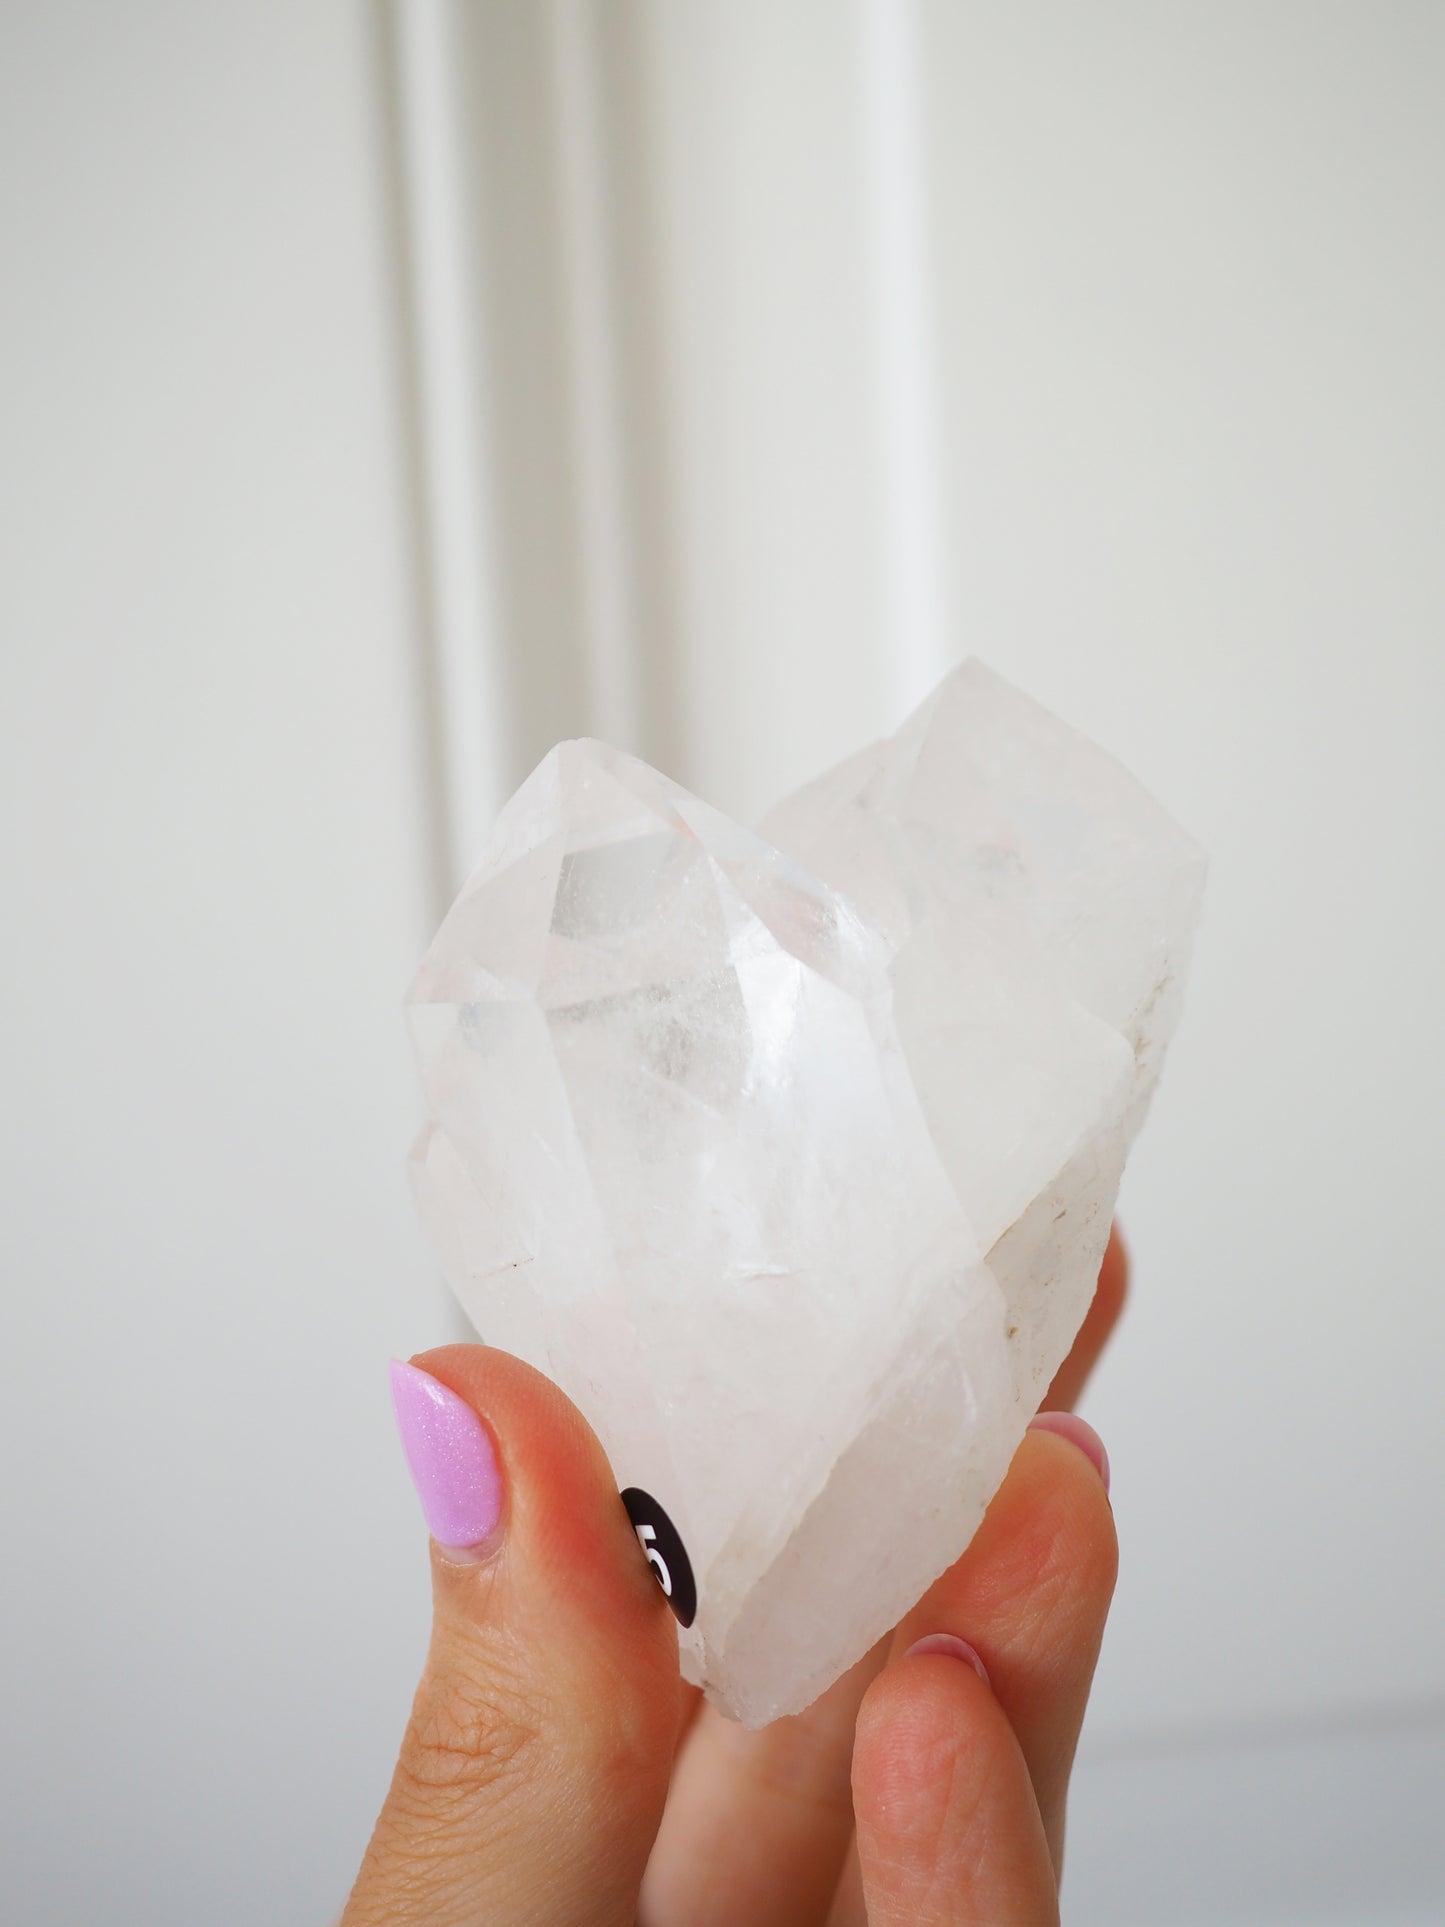 Kopie von Bergkristall Cluster ca 7.5cm [5] - aus Minas Gerais Brasilien HIGH QUALITY